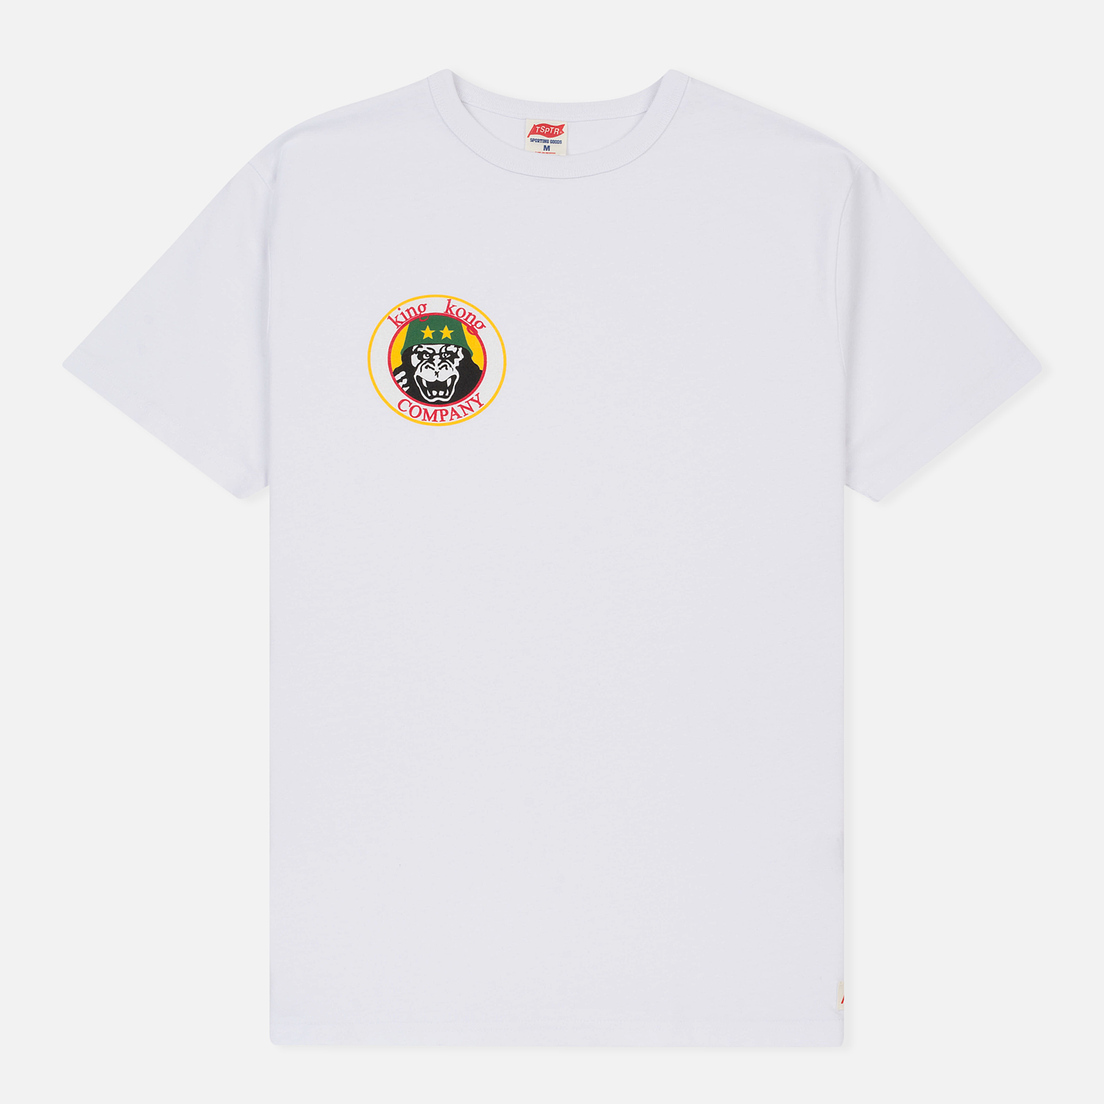 TSPTR Мужская футболка King Kong Company